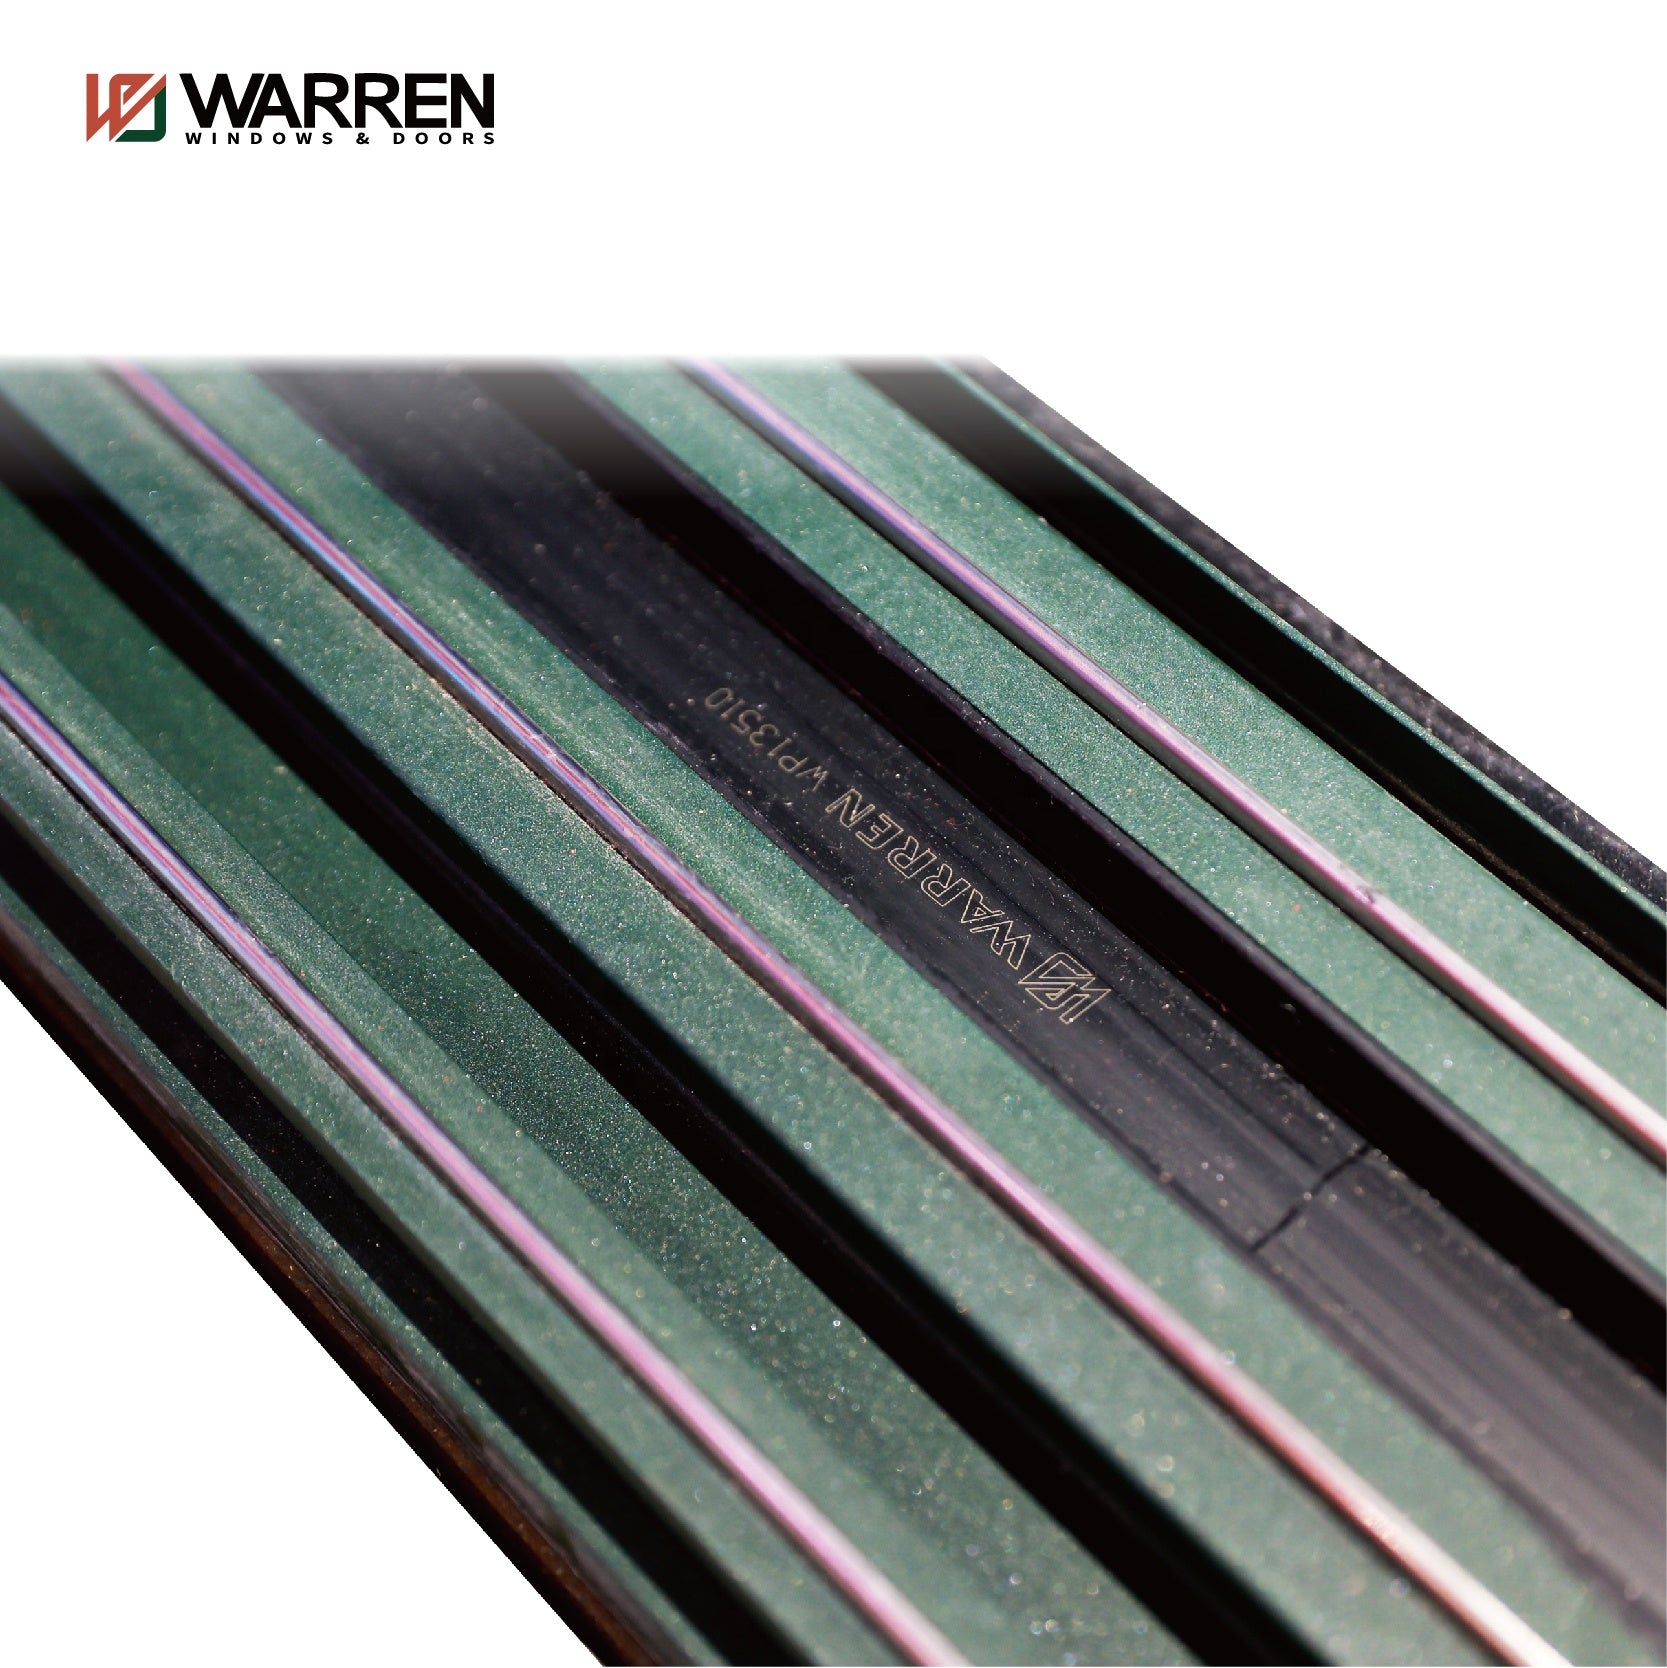 Warren Sliding Glass Doors Windproof Waterproof Aluminium Double Glass Sliding Door New Construction Exterior Walls Designs